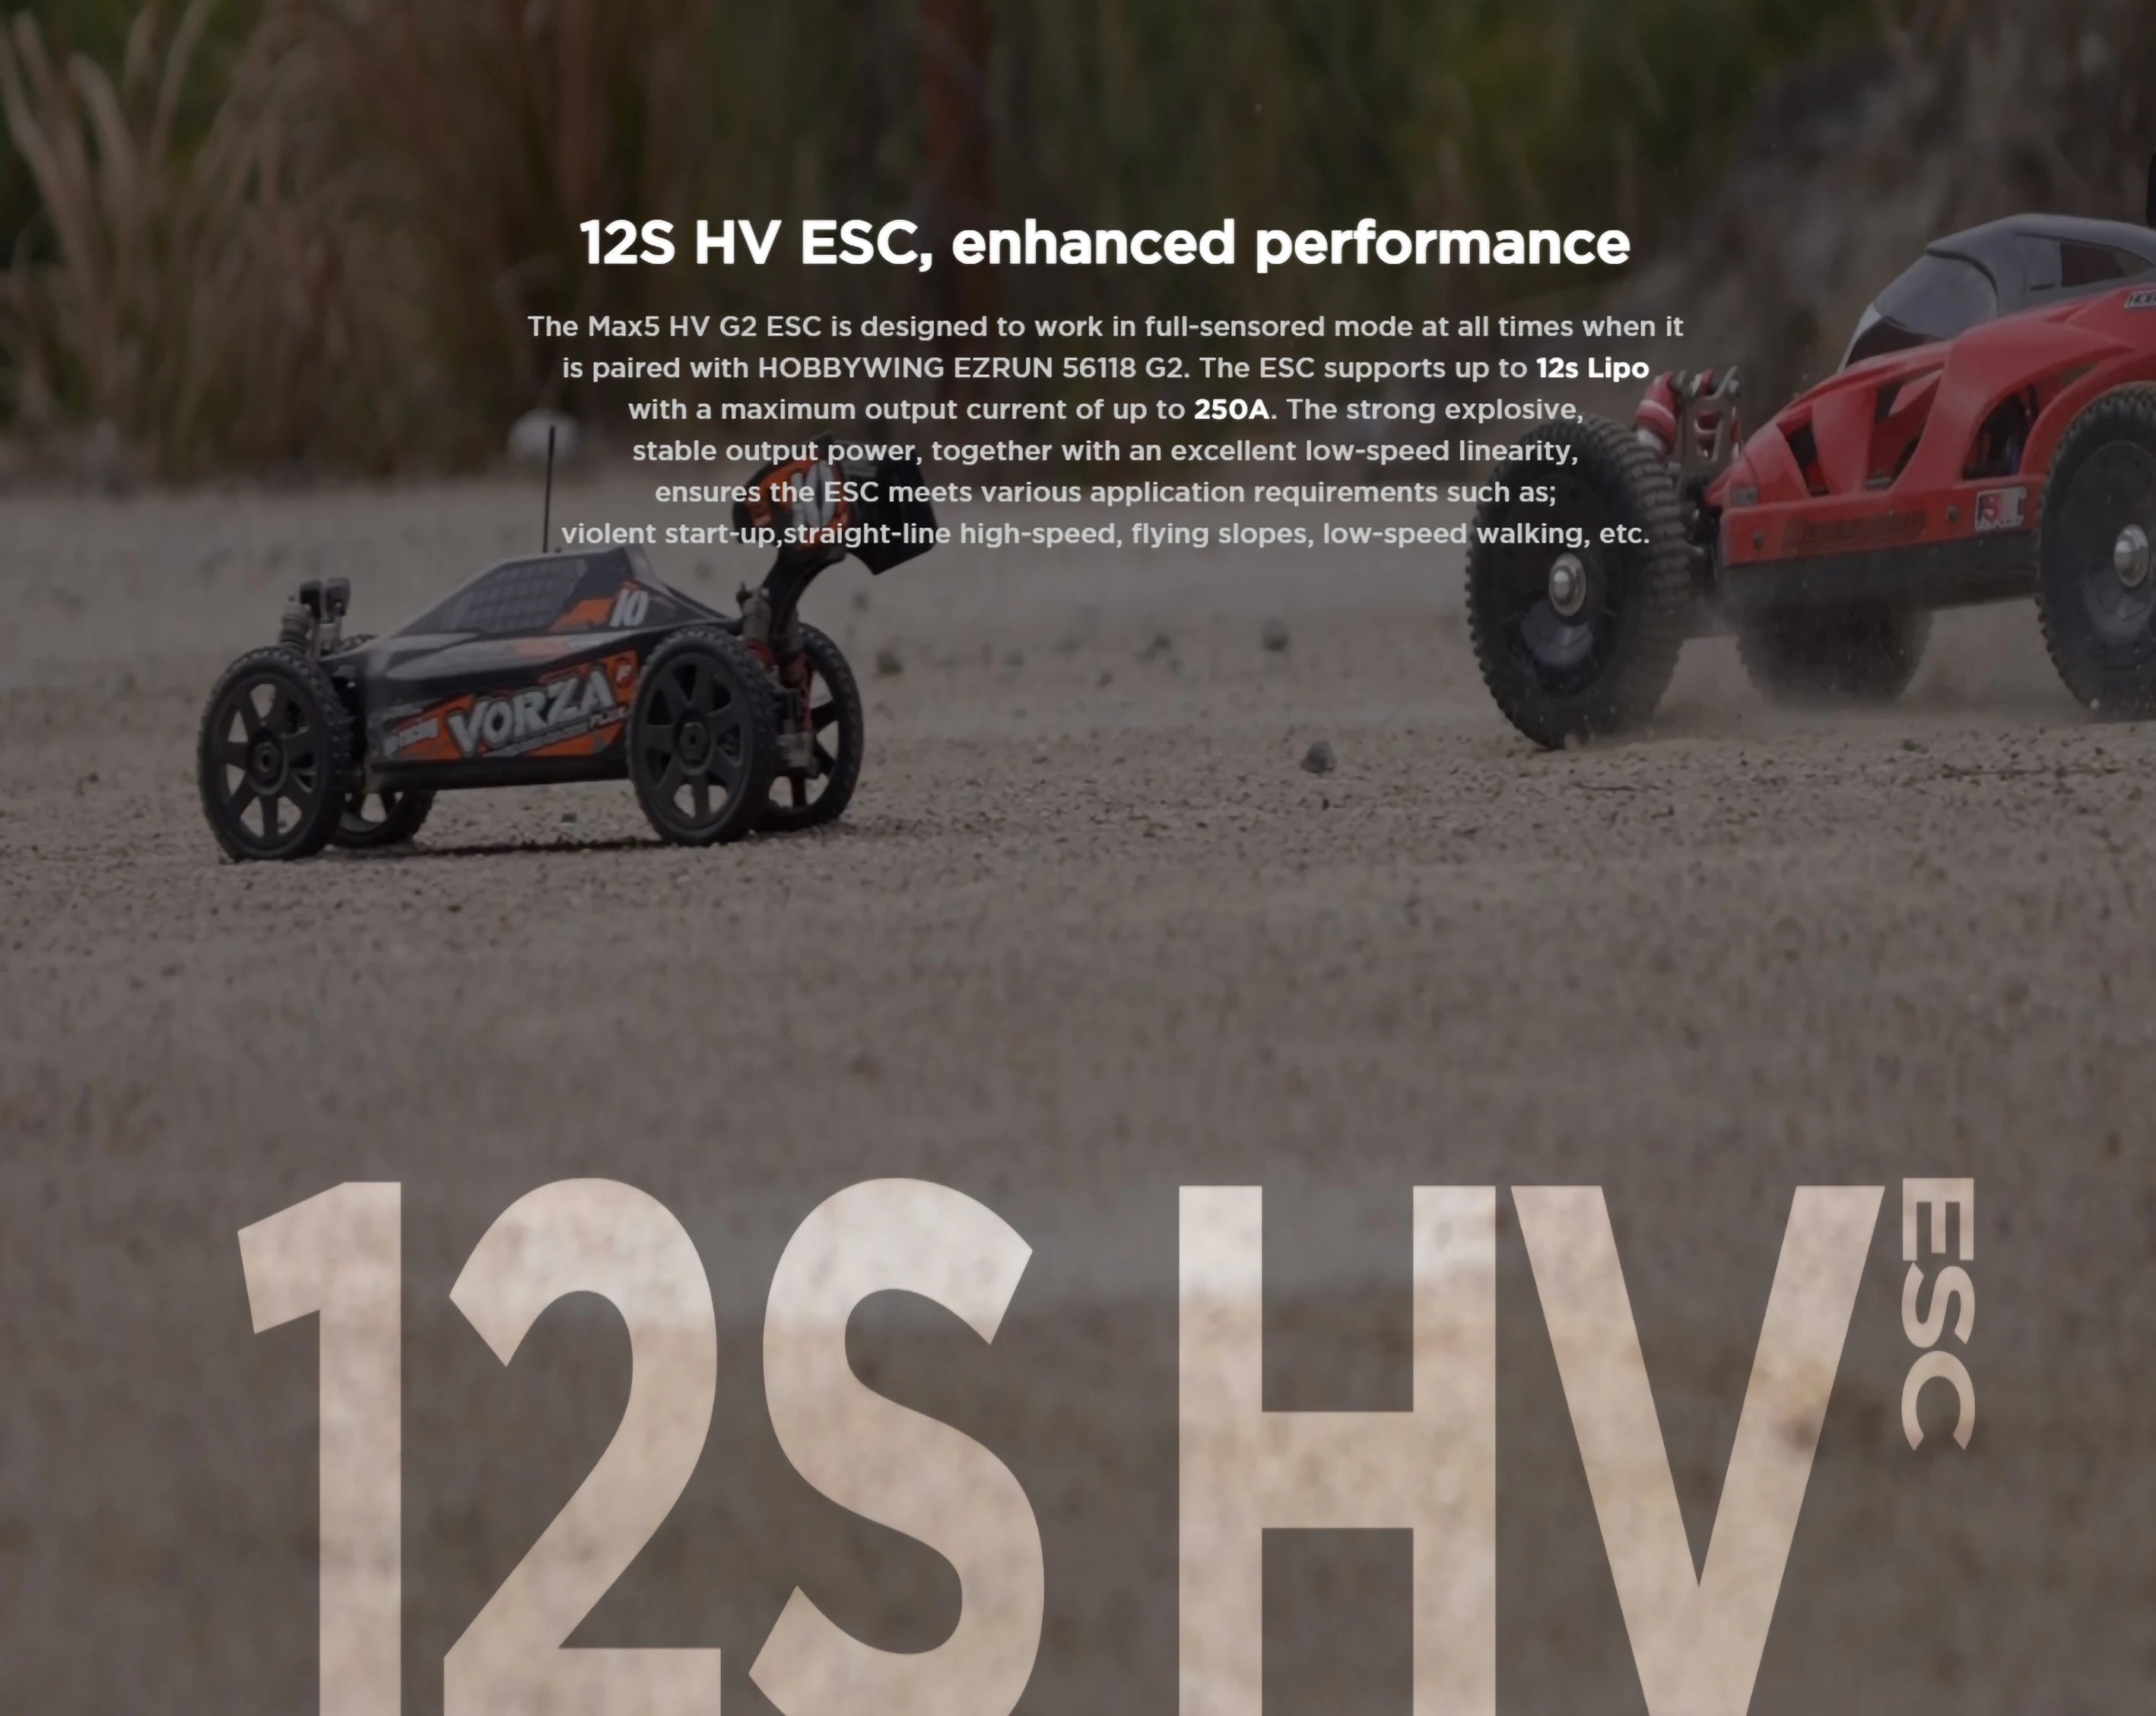 Hobbywing EZRUN MAX5 HV G2 ESC, the Max5 HV G2 ESC is designed to work in full-sensored